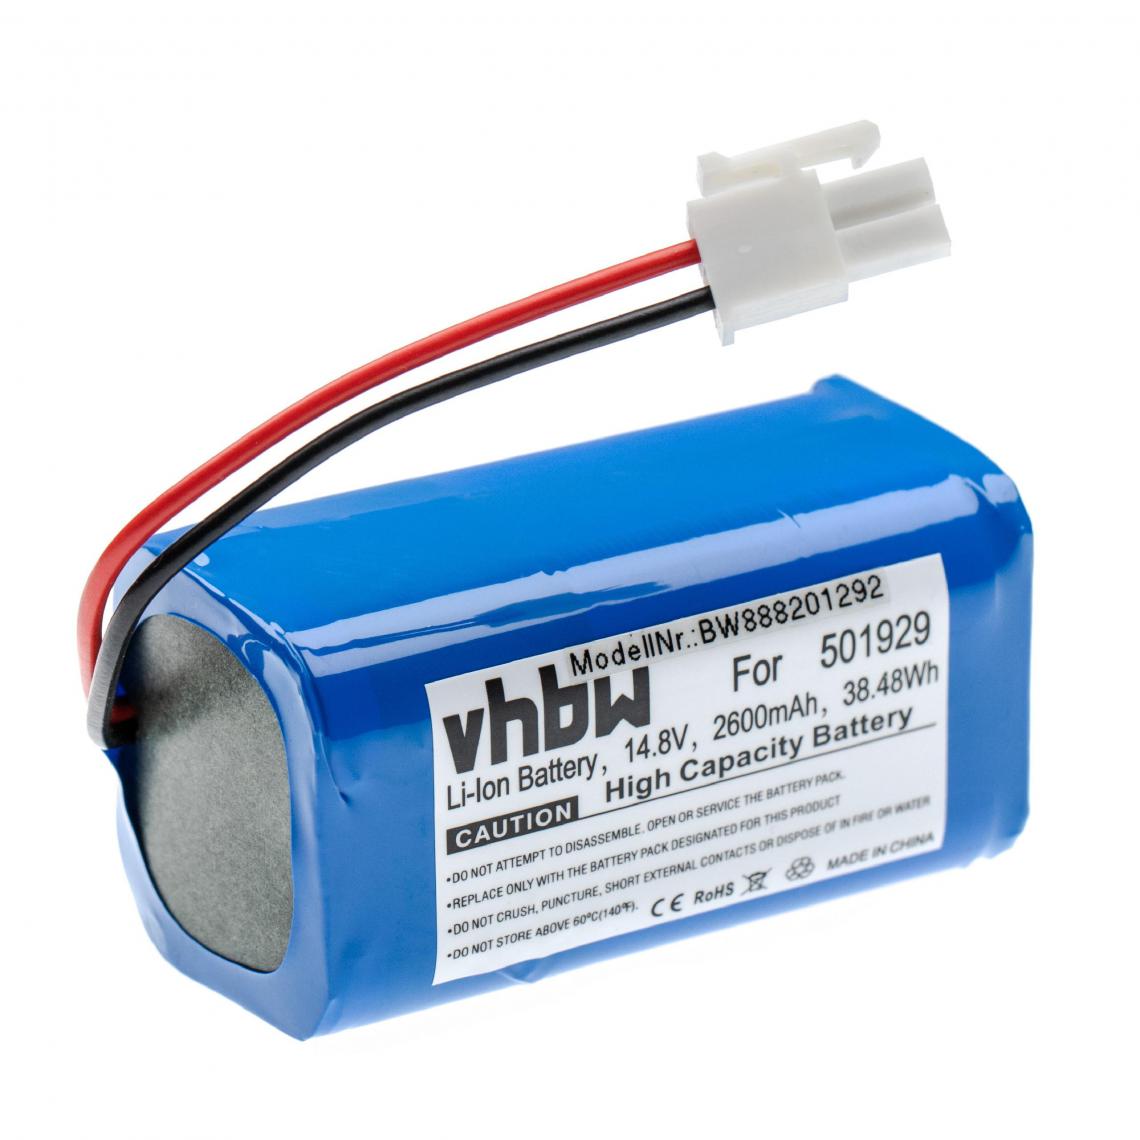 Vhbw - vhbw Batterie compatible avec Ecovacs Deebot CEN540, CEN646, CEN660, CR120, DL33, DL35 aspirateur, robot électroménager (2600mAh, 14,8V, Li-ion) - Accessoire entretien des sols